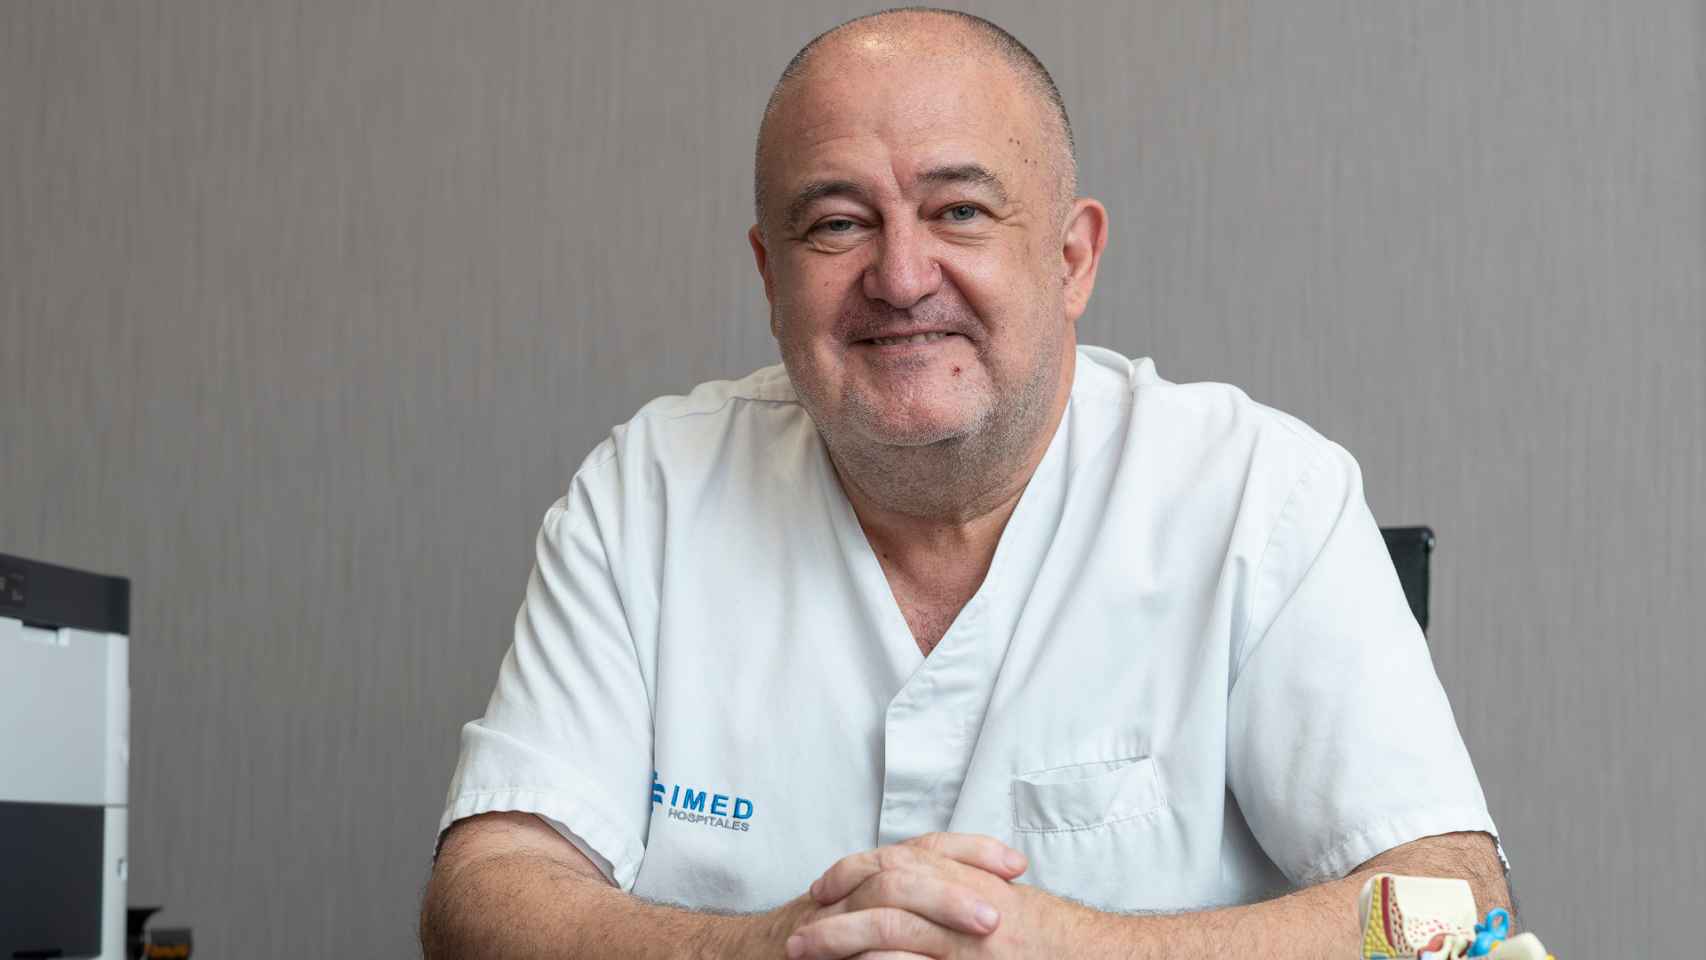 El Dr. Rafael Ramírez, jefe de servicio de la Unidad de Otorrinolaringología del Hospital IMED Valencia. EE